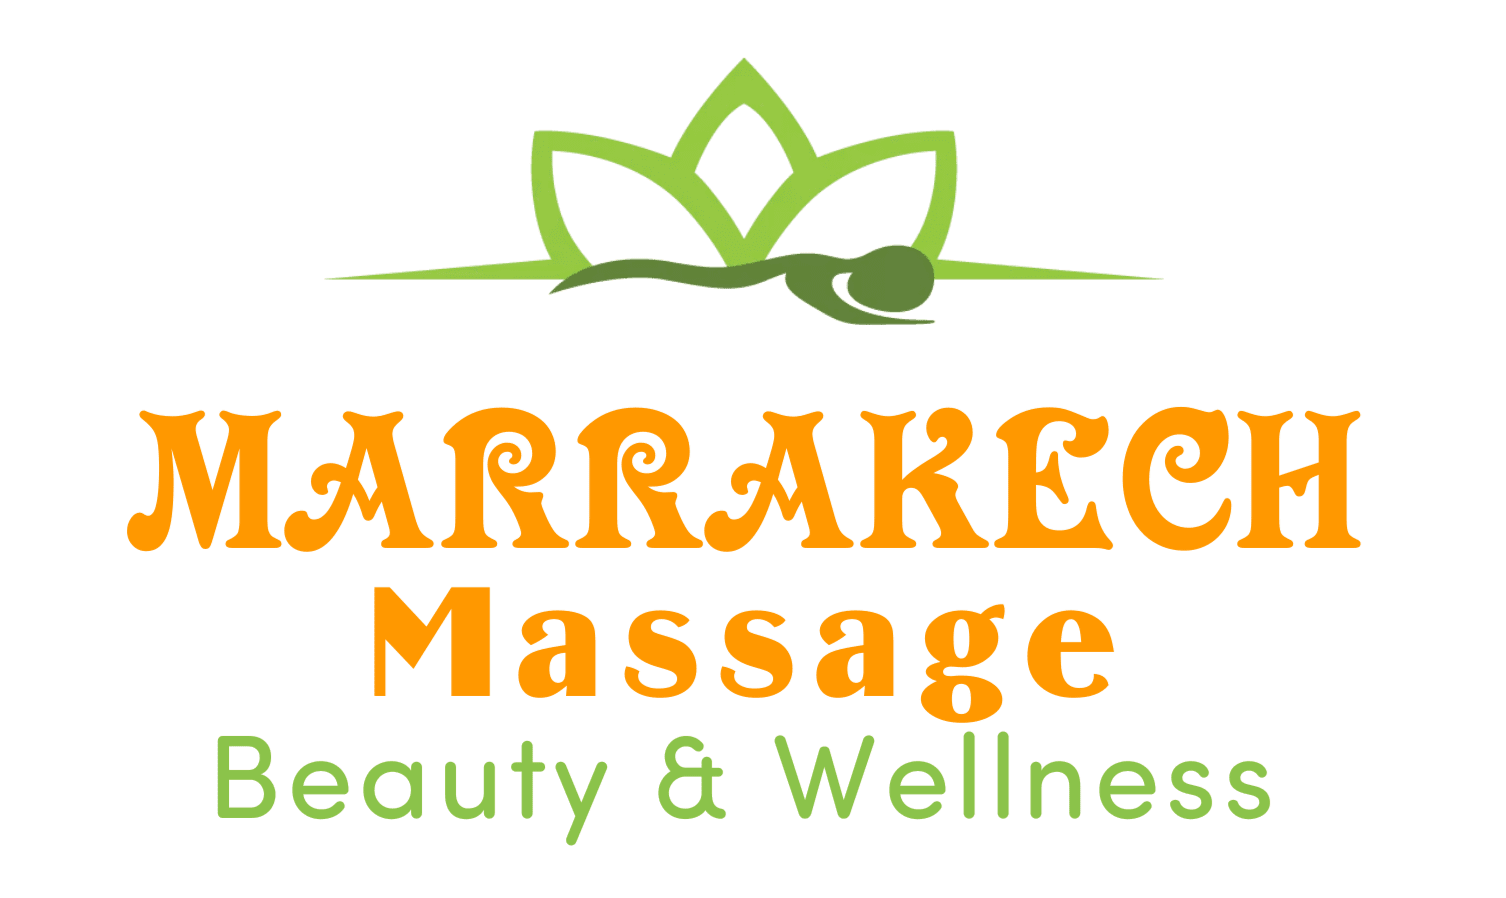 Marrakech massage logo